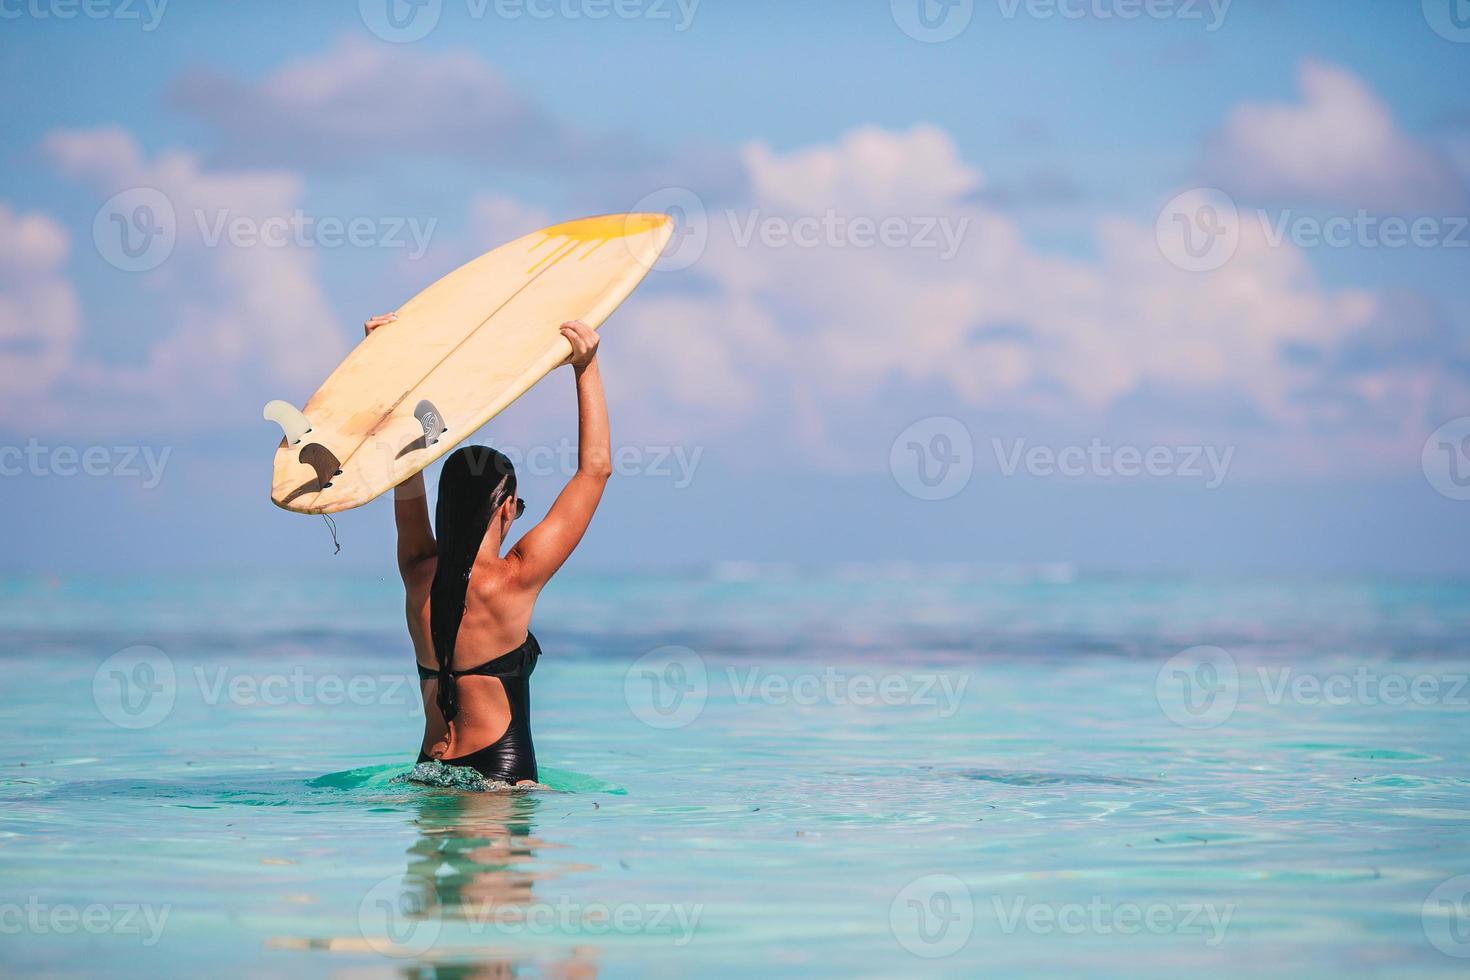 Schöne Surferin bereit zum Surfen im türkisfarbenen Meer, auf Stand-Up-Paddle-Board im exotischen Urlaub foto